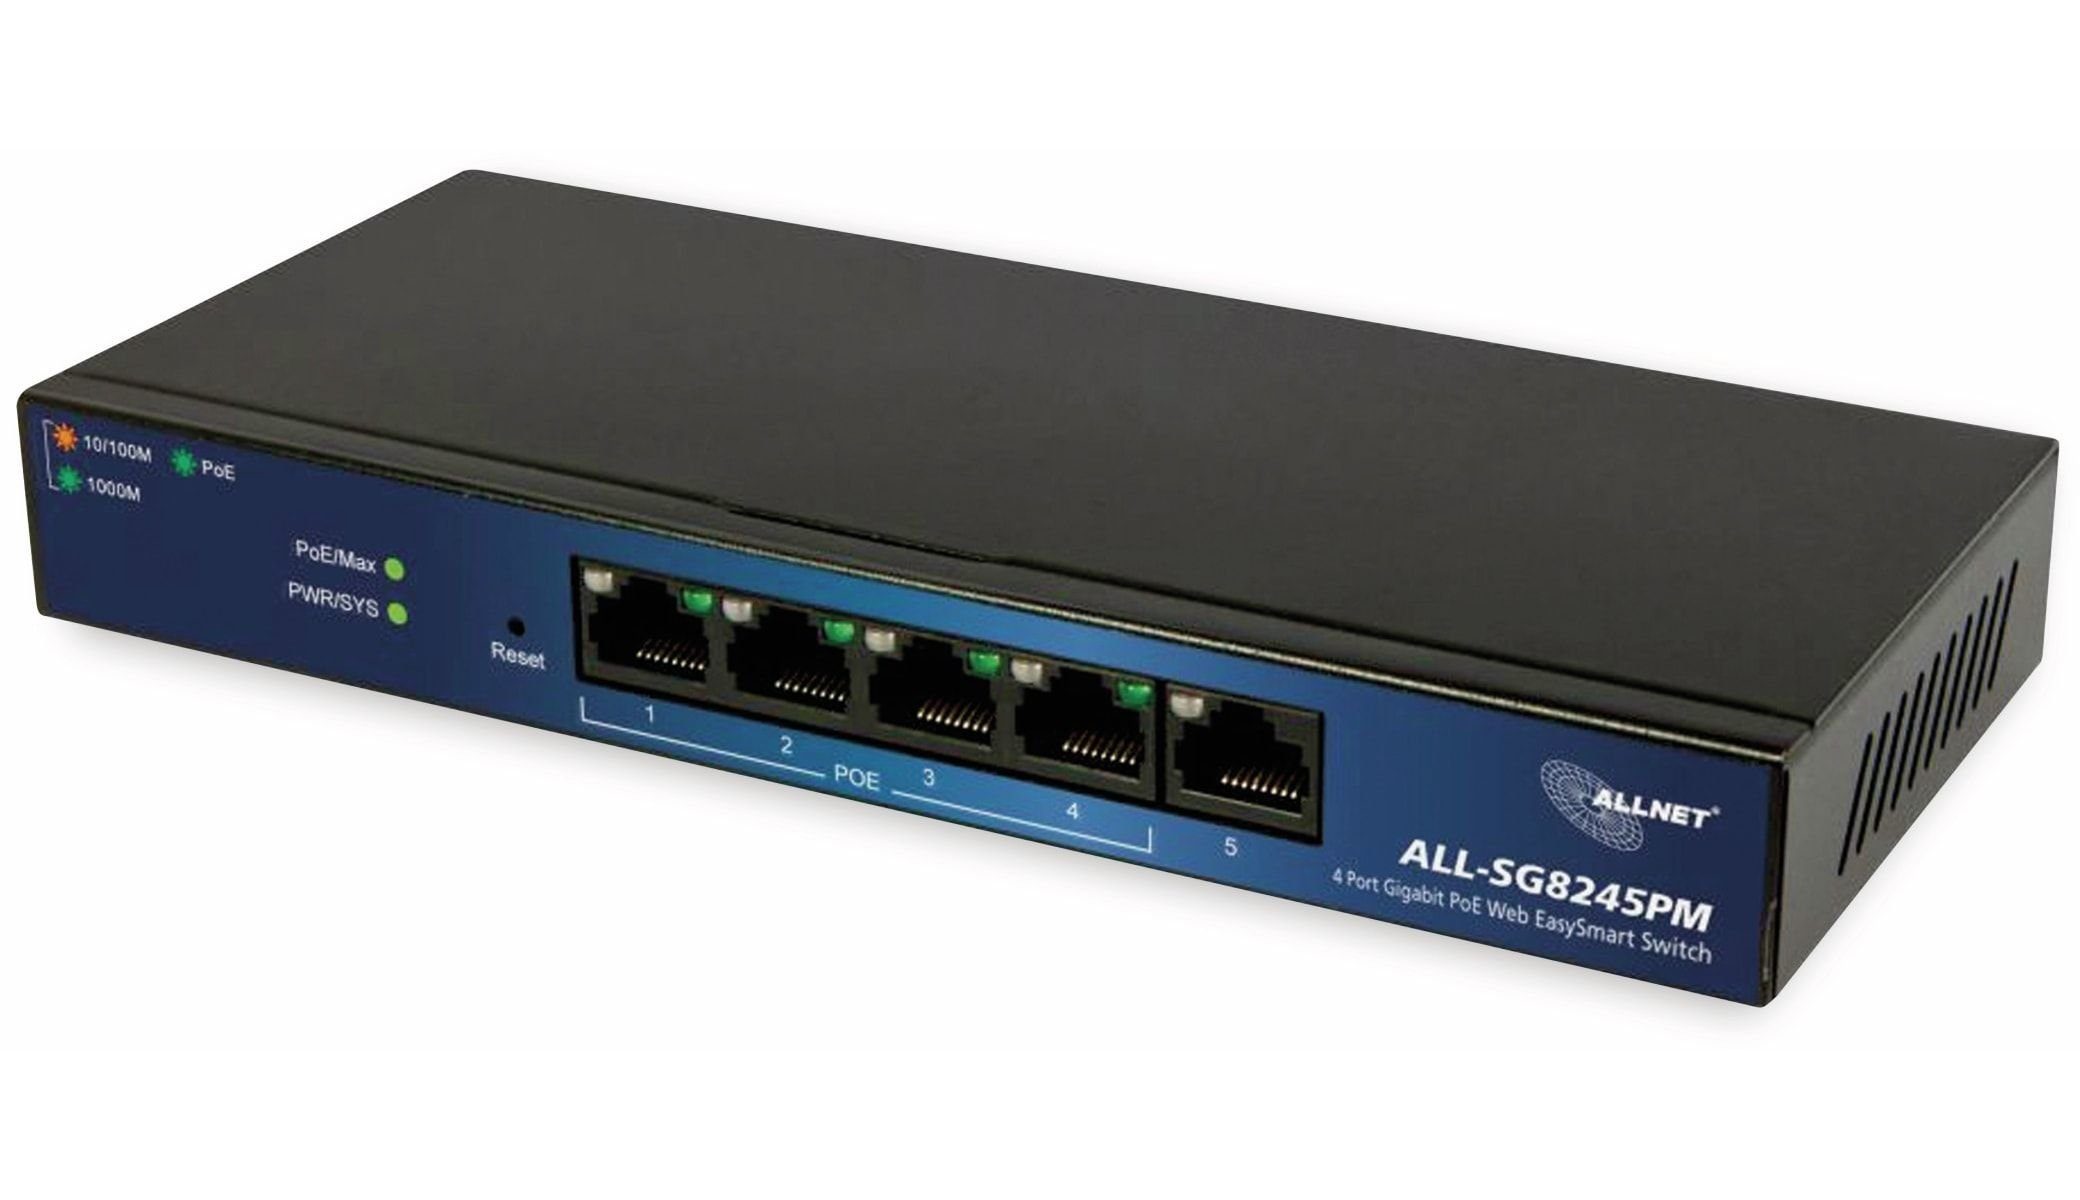 Allnet ALLNET Netzwerk-Switch PoE managed, 5-Port, ALL-SG8245PM, Switch